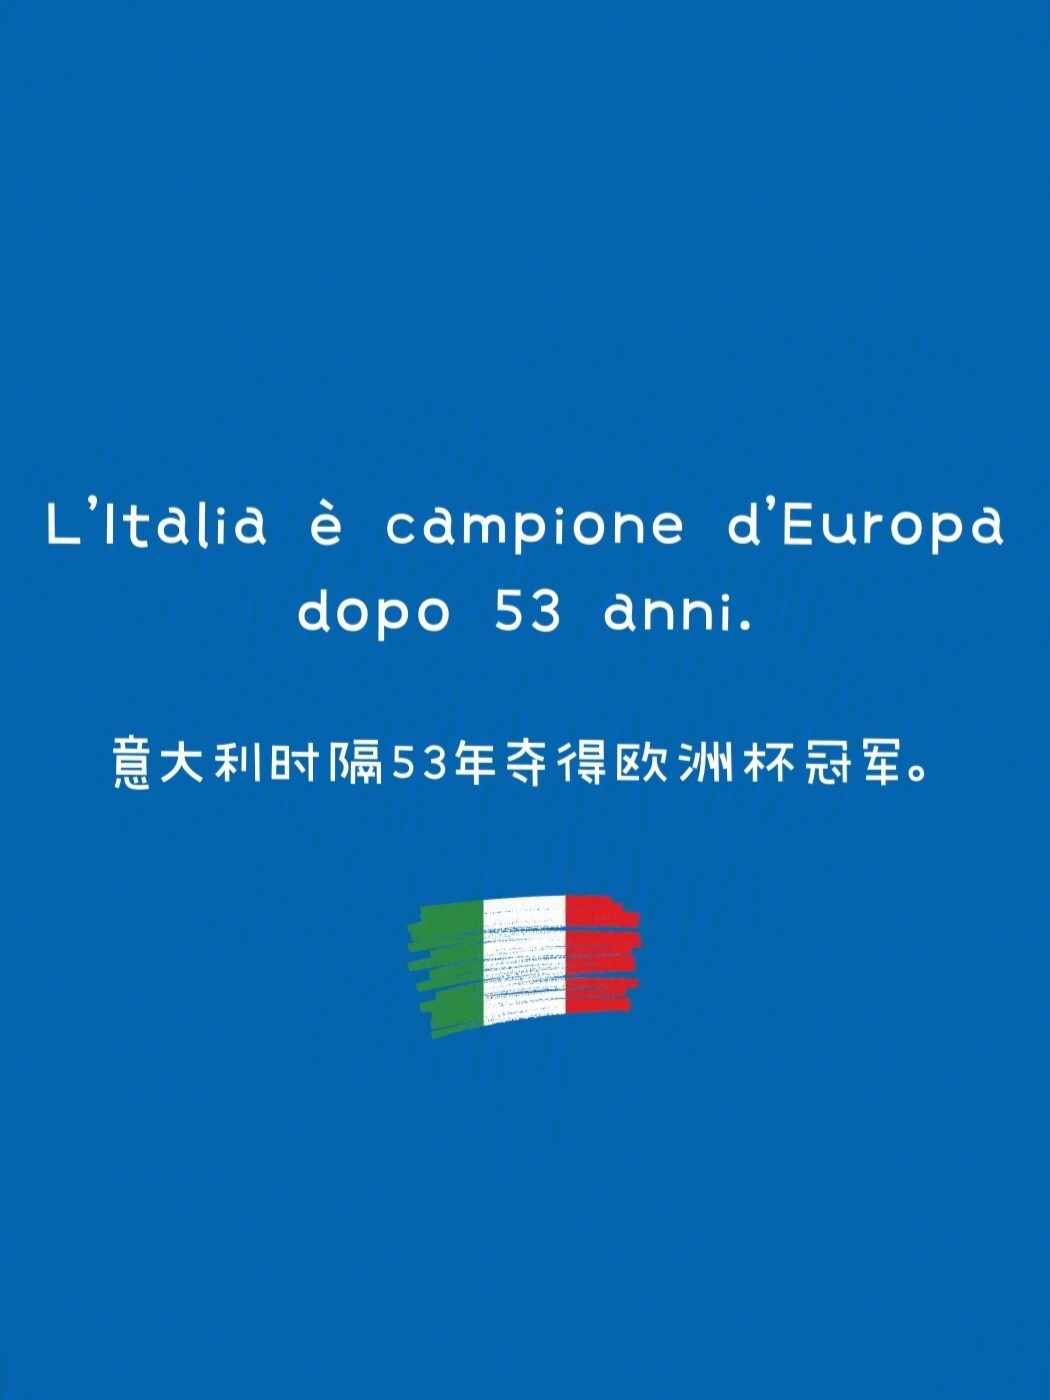 意大利2000年欧洲杯阵容_98年世界杯意大利阵容_2000年欧洲杯 意大利阵容